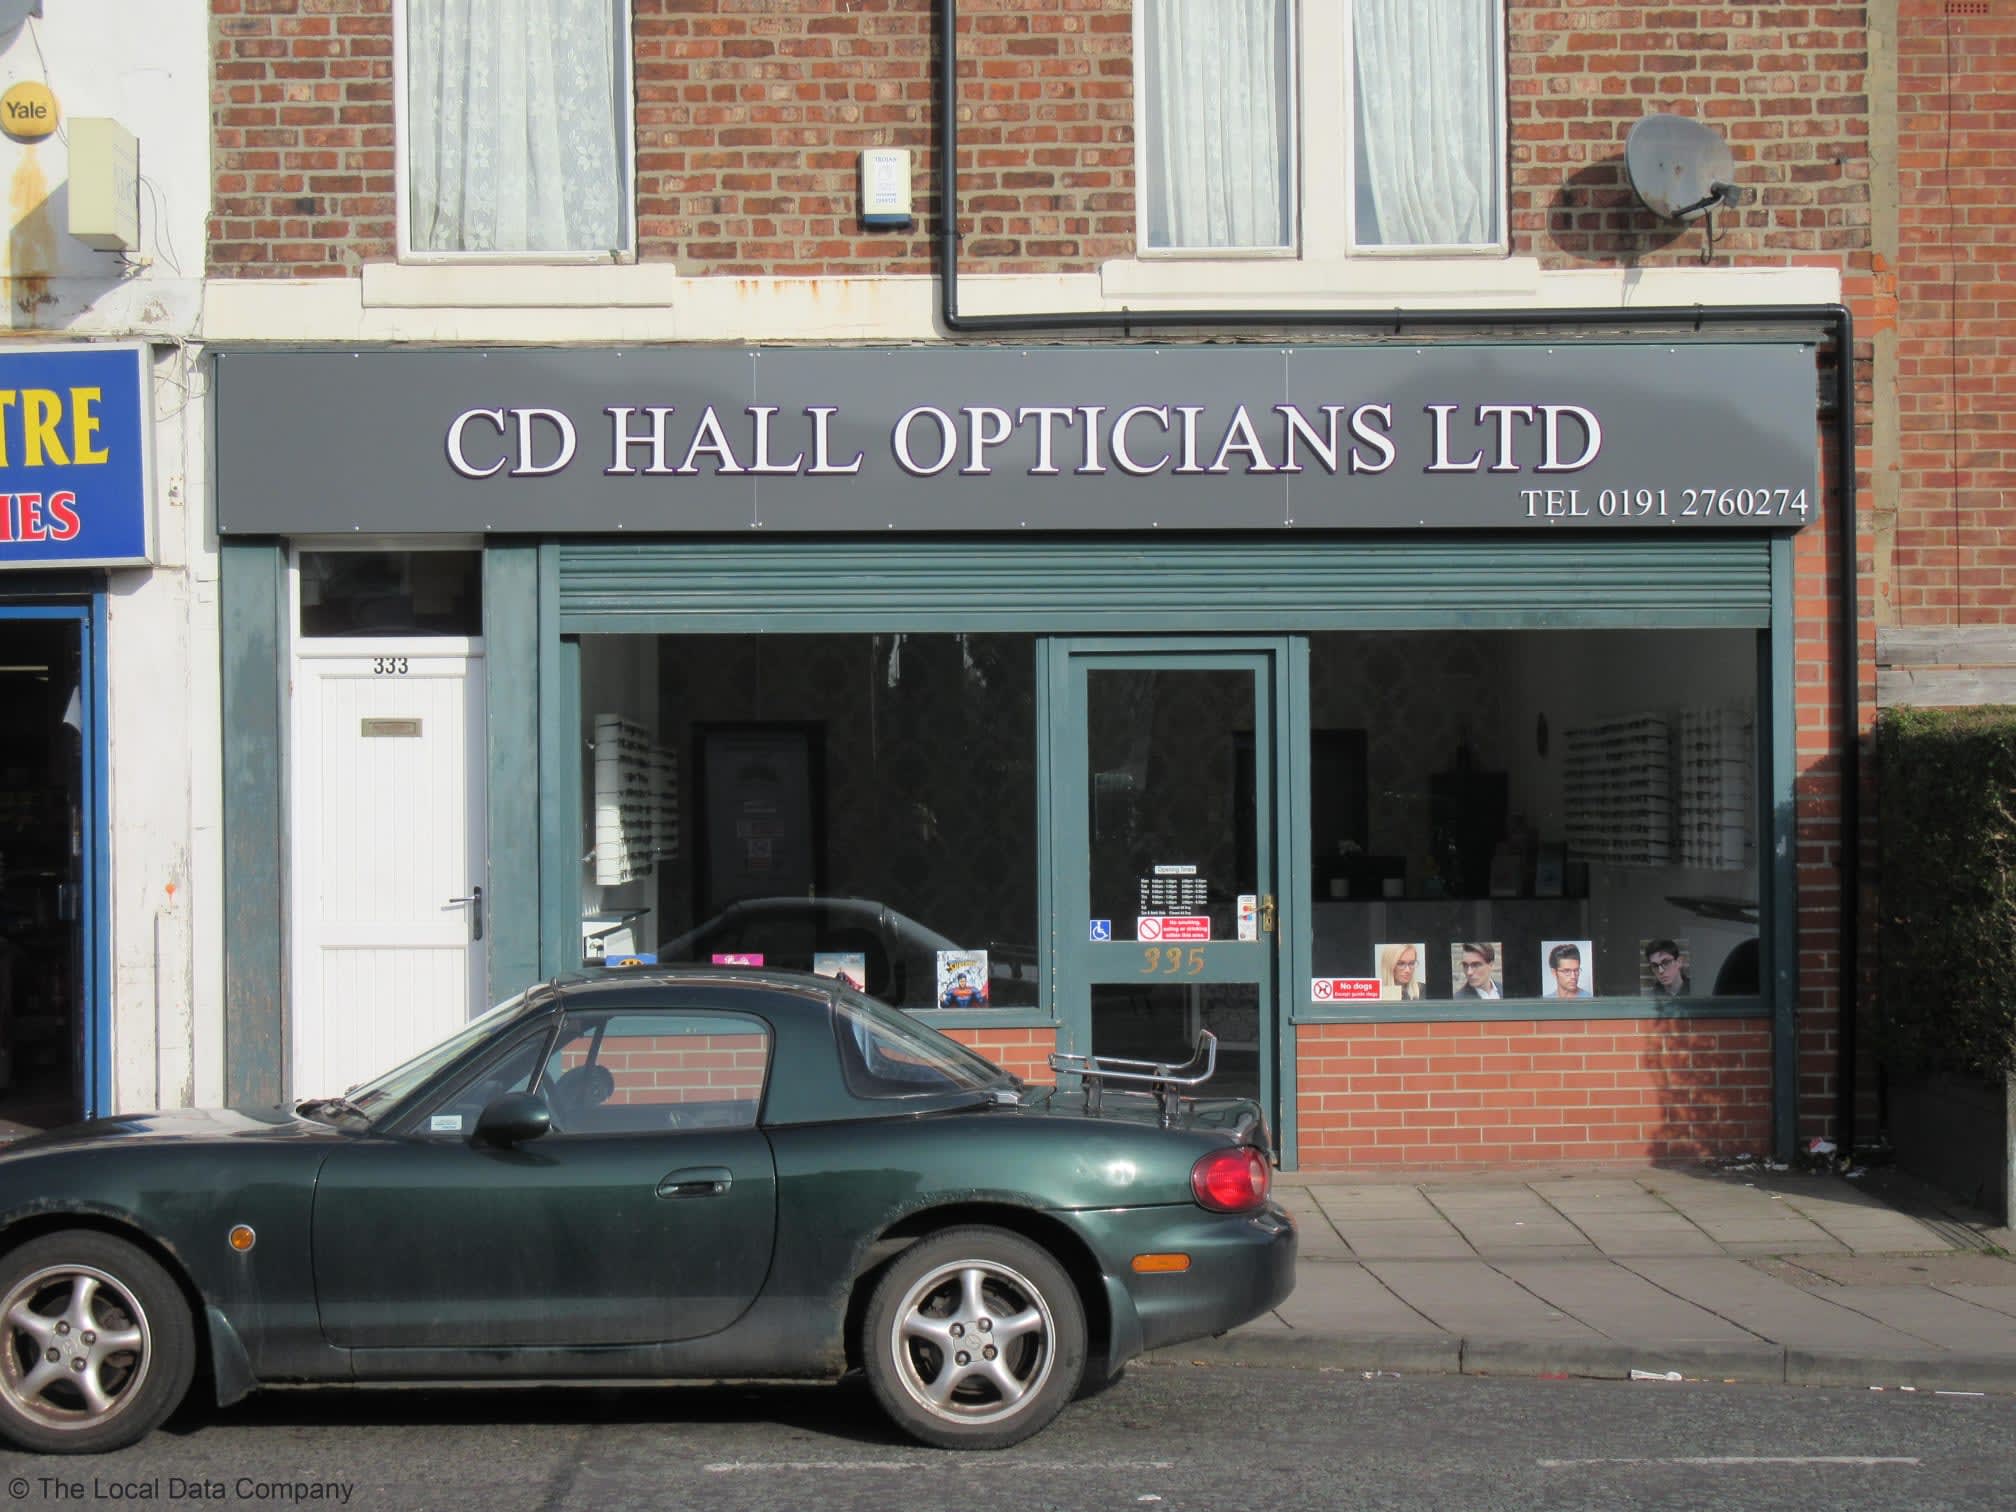 Images C D Hall Opticians Ltd